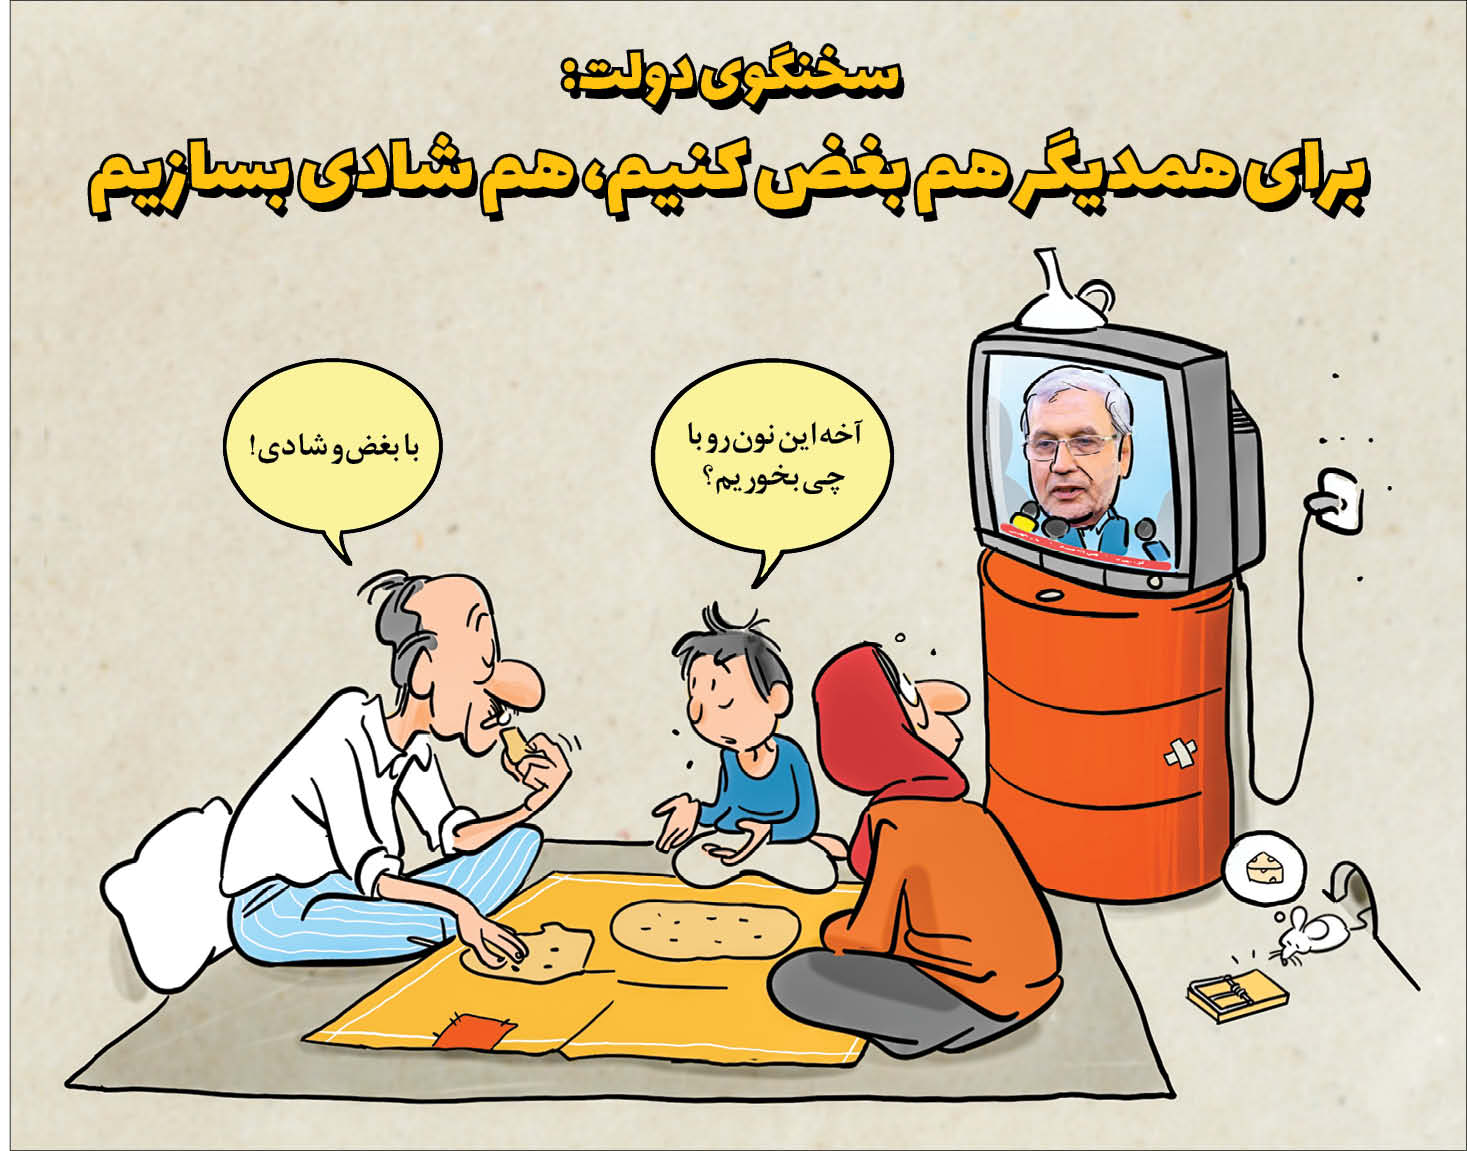 کارتونیست: سعید مرادی